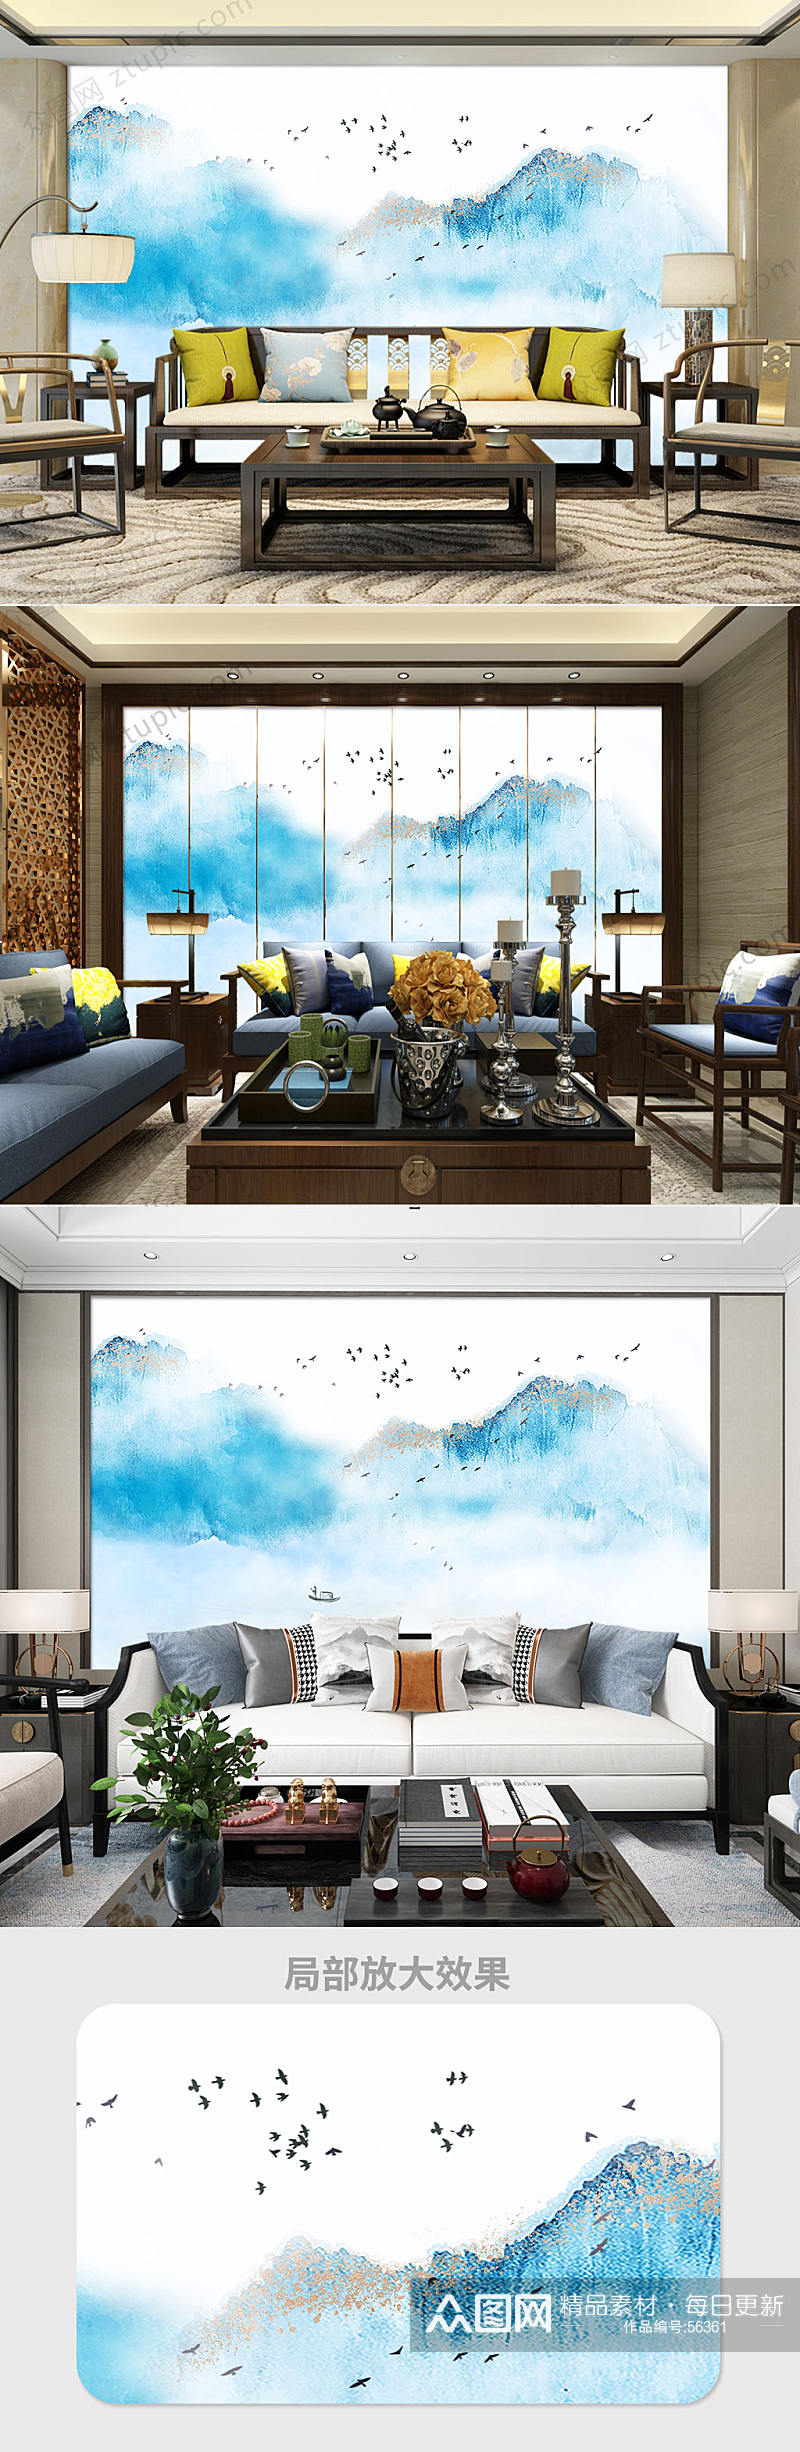 新中式抽象水墨电视背景墙素材